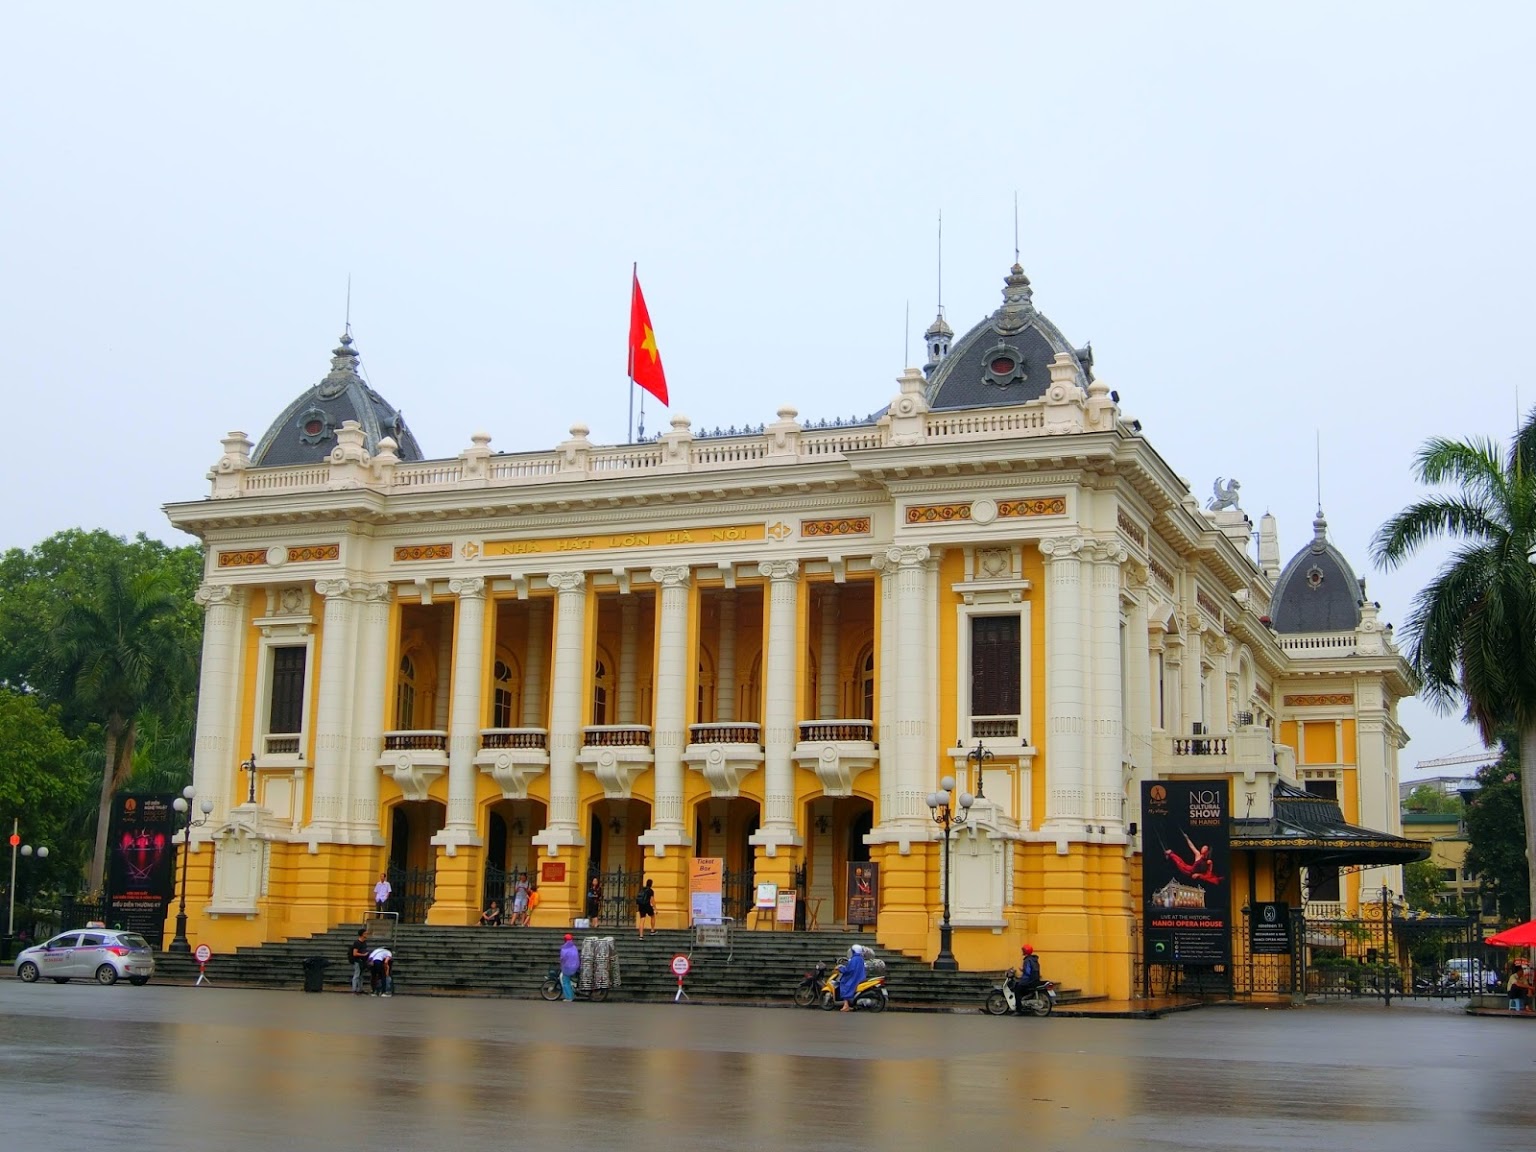 Nhà hát lớn Hà Nội là một phiên bản nhỏ hơn của Opéra Garnier